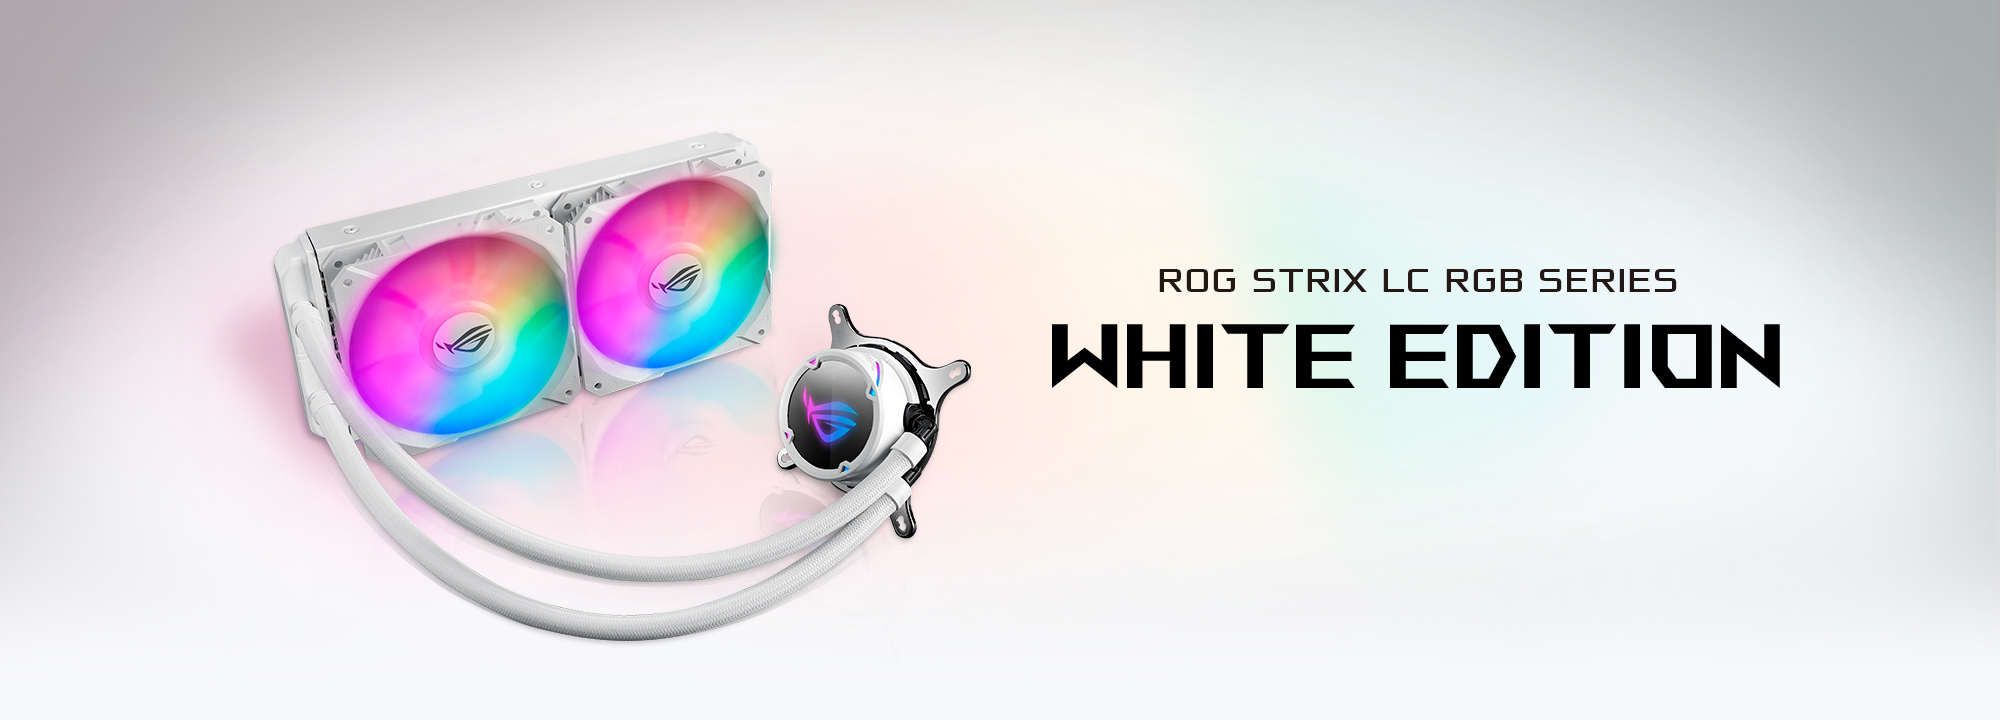 ROG Strix LC 240 RGB 白色版